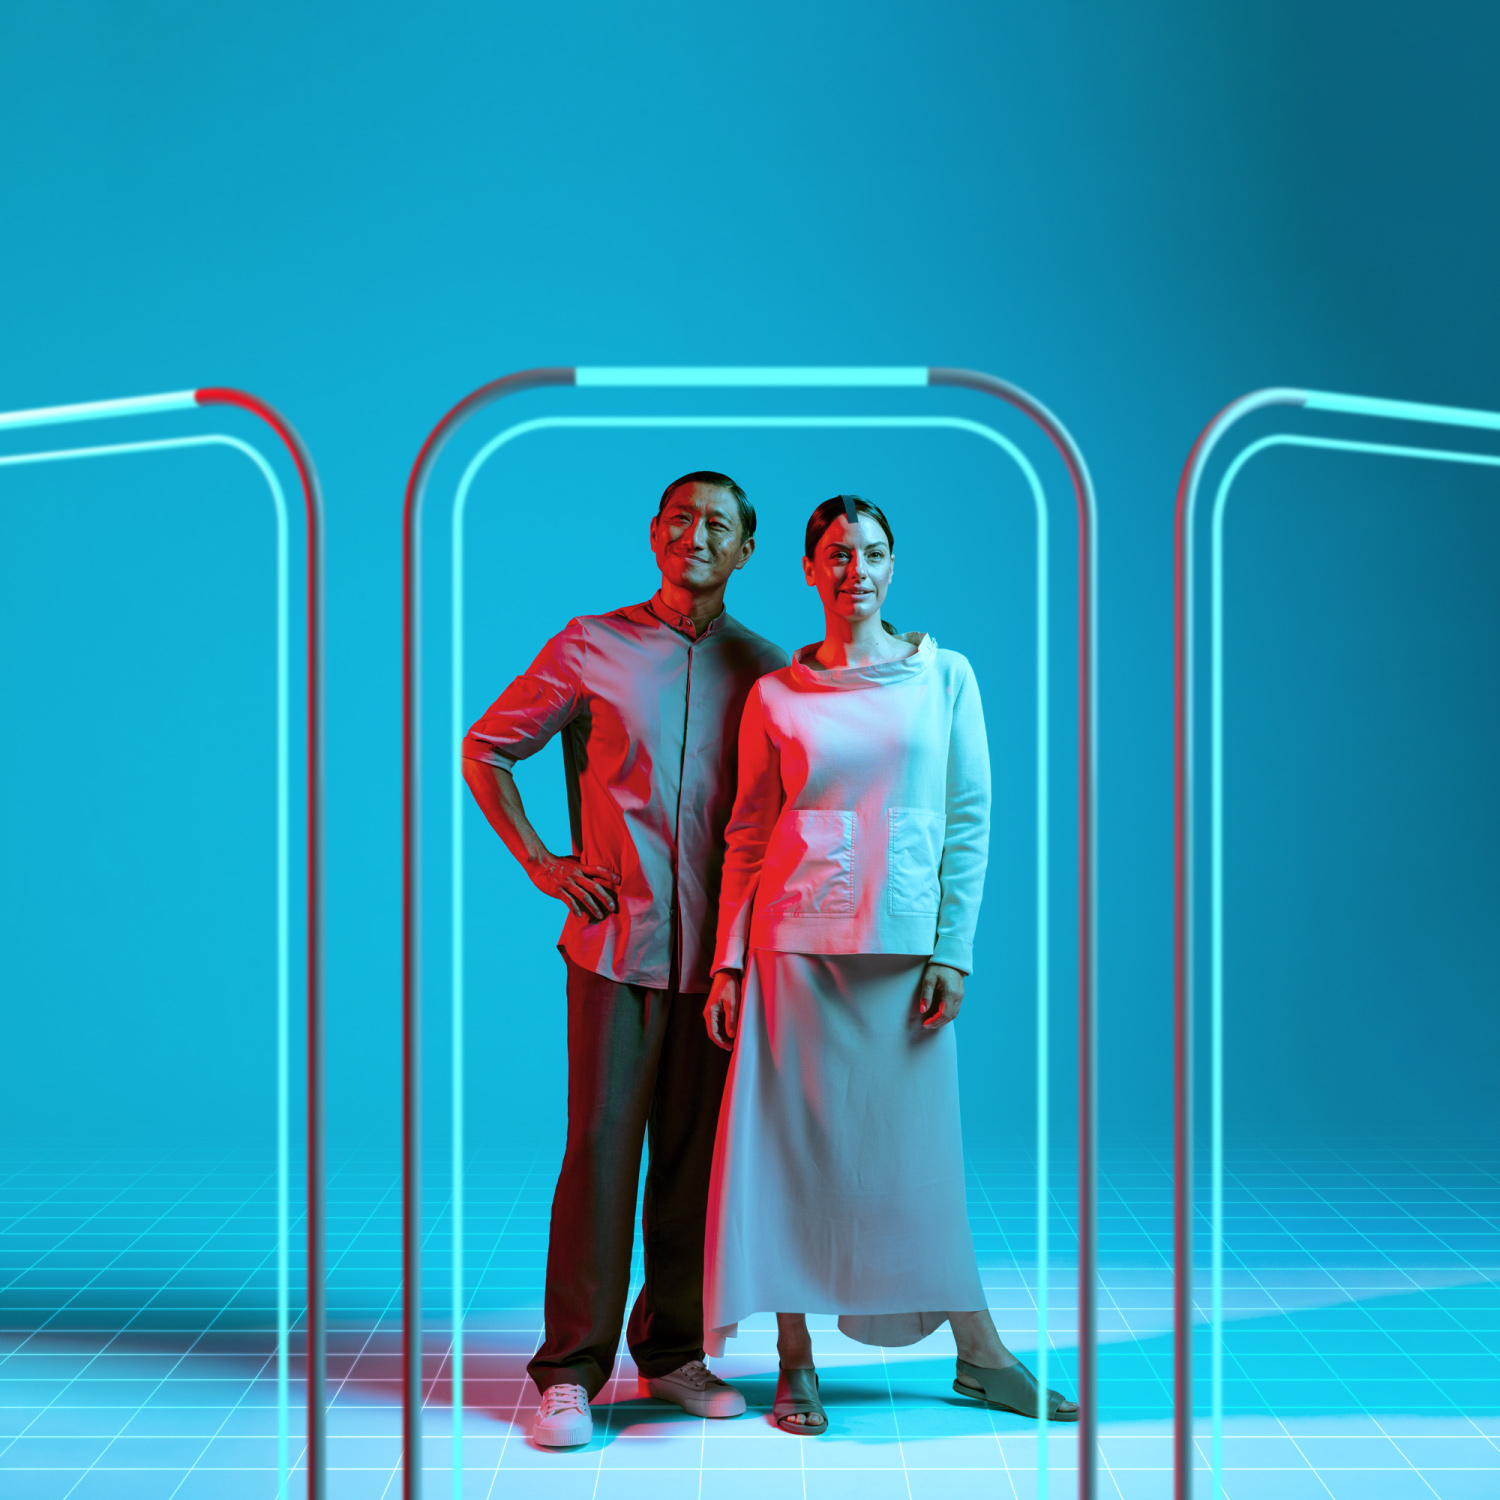 Ein Mann und eine Frau stehen vor drei Portalen und blicken erwartungsvoll nach vorn